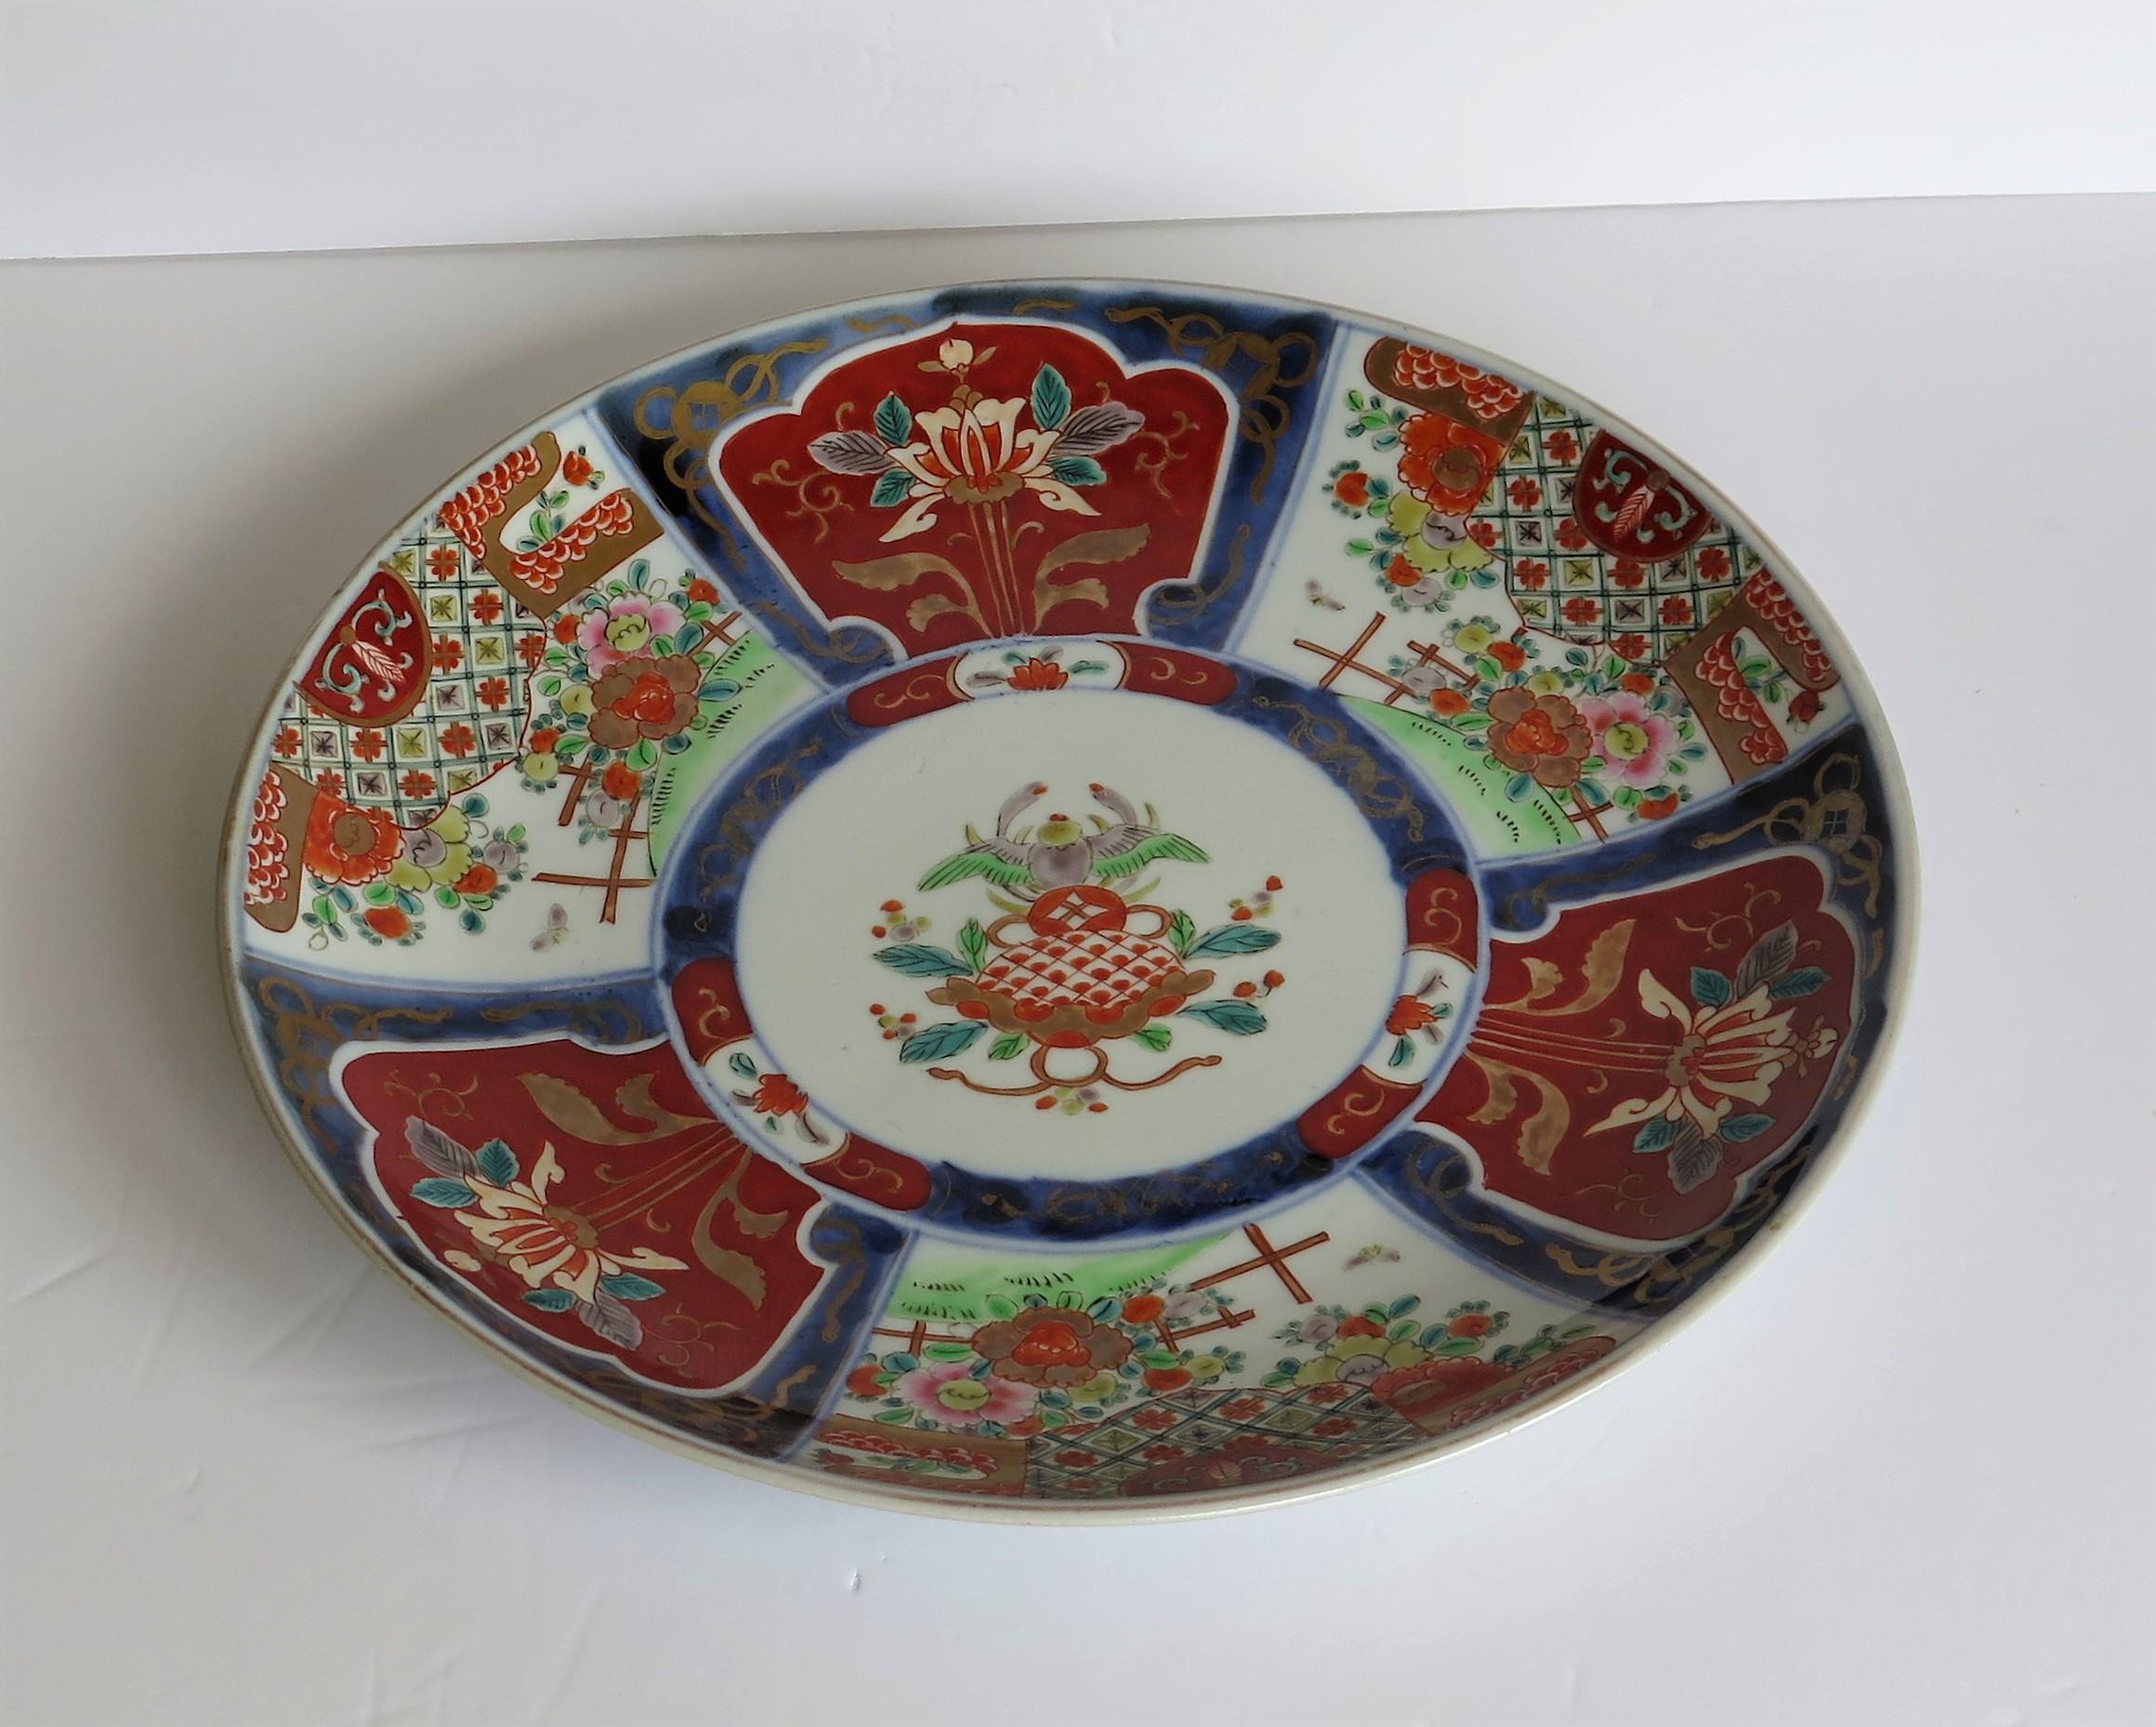 Dies ist eine gute Qualität, Hand dekoriert japanischen Porzellan Ladegerät, große Platte oder Schüssel mit einem Imari-Muster, aus dem späten 19. Jahrhundert, Meiji-Periode, um 1880.

Die runde Ladestation ist gut getopft und steht auf einem